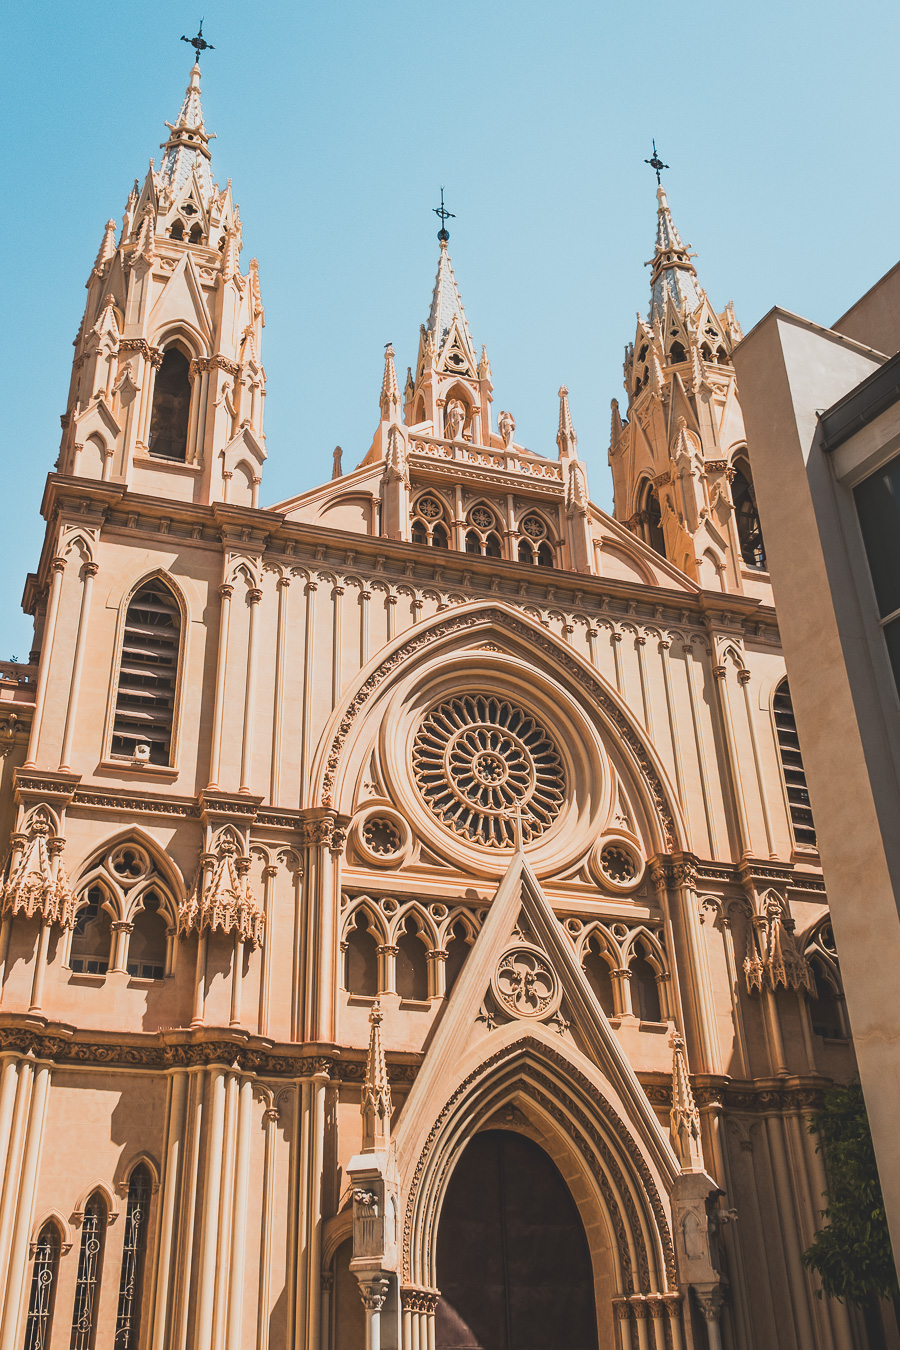 Vous souhaitez visiter Malaga en 1 jour à pied ? Plongez dans l'atmosphère vibrante de cette ville incontournable d'Andalousie. Explorez ses monuments historiques, ses plages ensoleillées et ses paysages pittoresques. Idéal pour votre Europe bucket list, ce guide vous dévoile les meilleures étapes pour un road trip en Espagne. Préparez-vous à être émerveillé par la beauté de Malaga. Cliquez maintenant pour commencer votre aventure et ajouter une nouvelle destination à votre voyage européen !